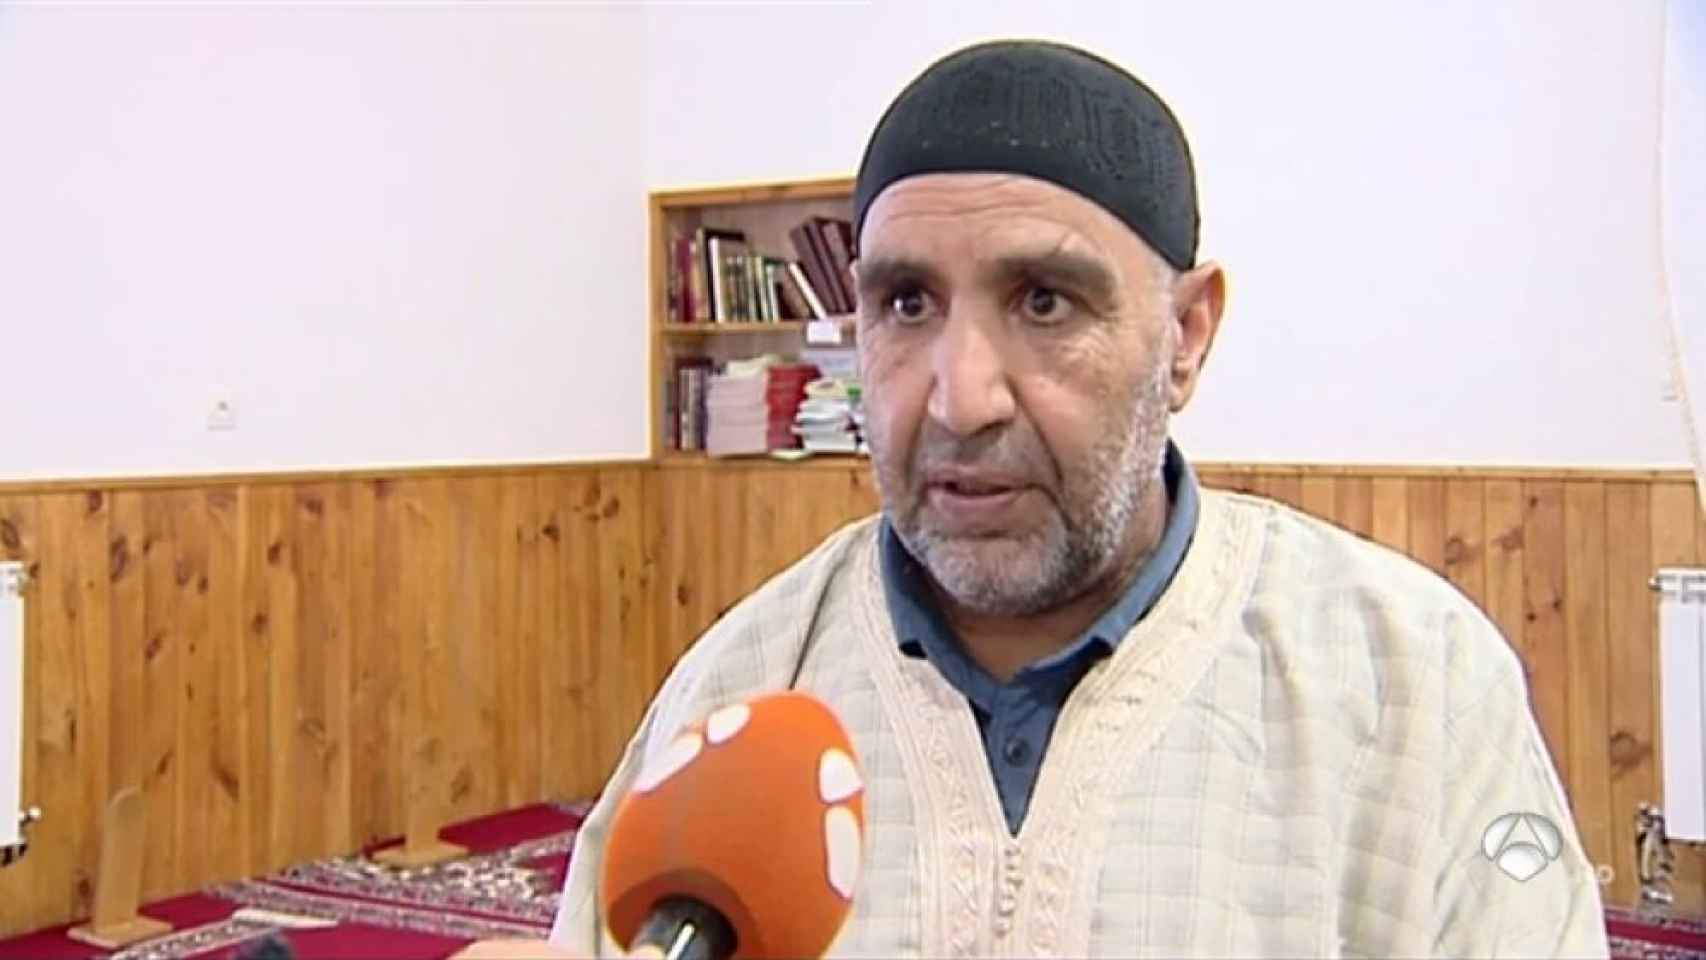 El nuevo imán de la nueva mezquita, Mohammed El Onsri, criticó duramente a Es Satty